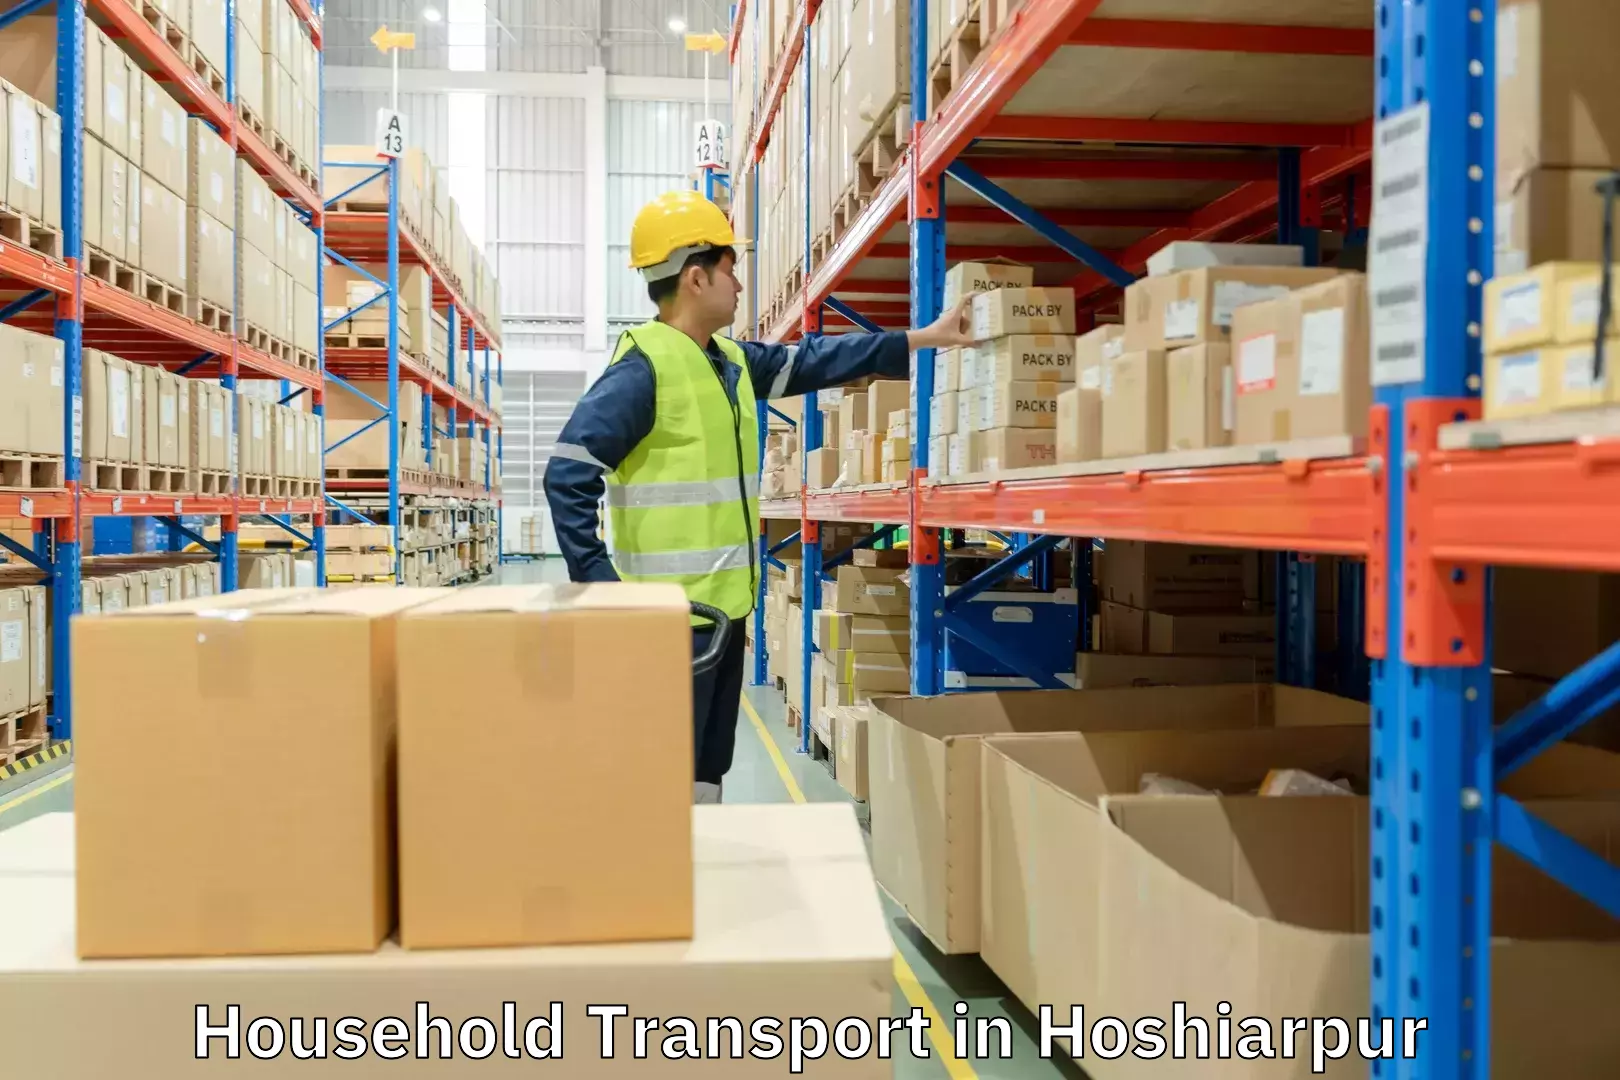 Household transport solutions in Hoshiarpur